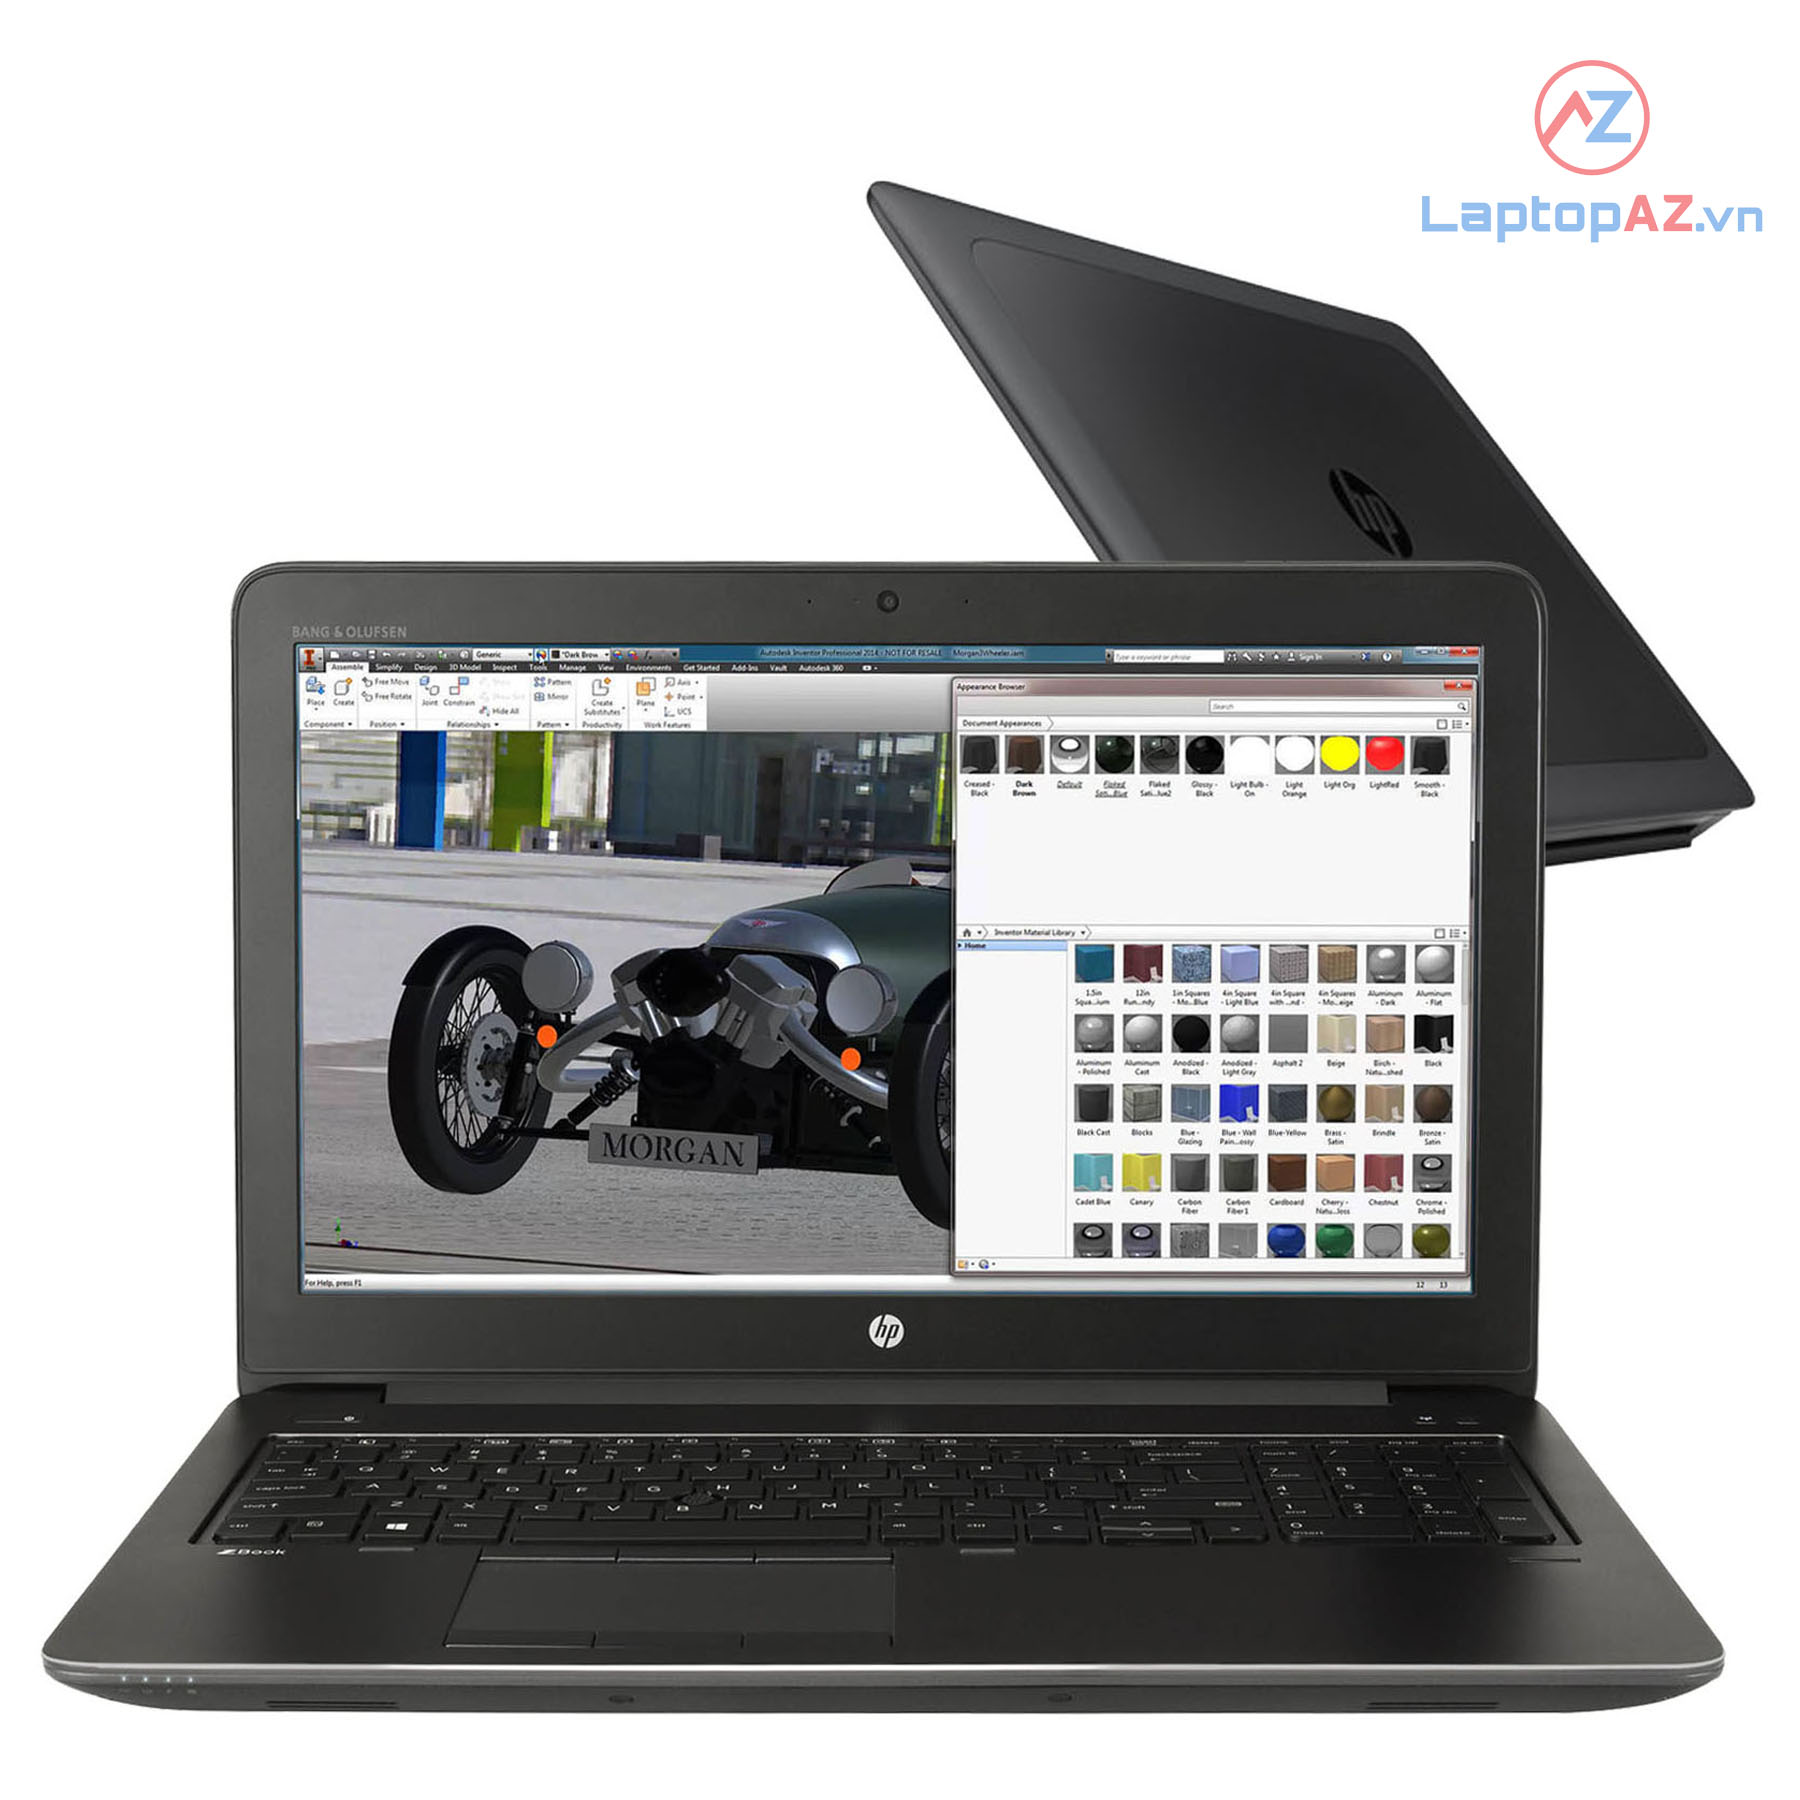 Bán Laptop HP ZBook 15 G4 core i7 chính hãng 